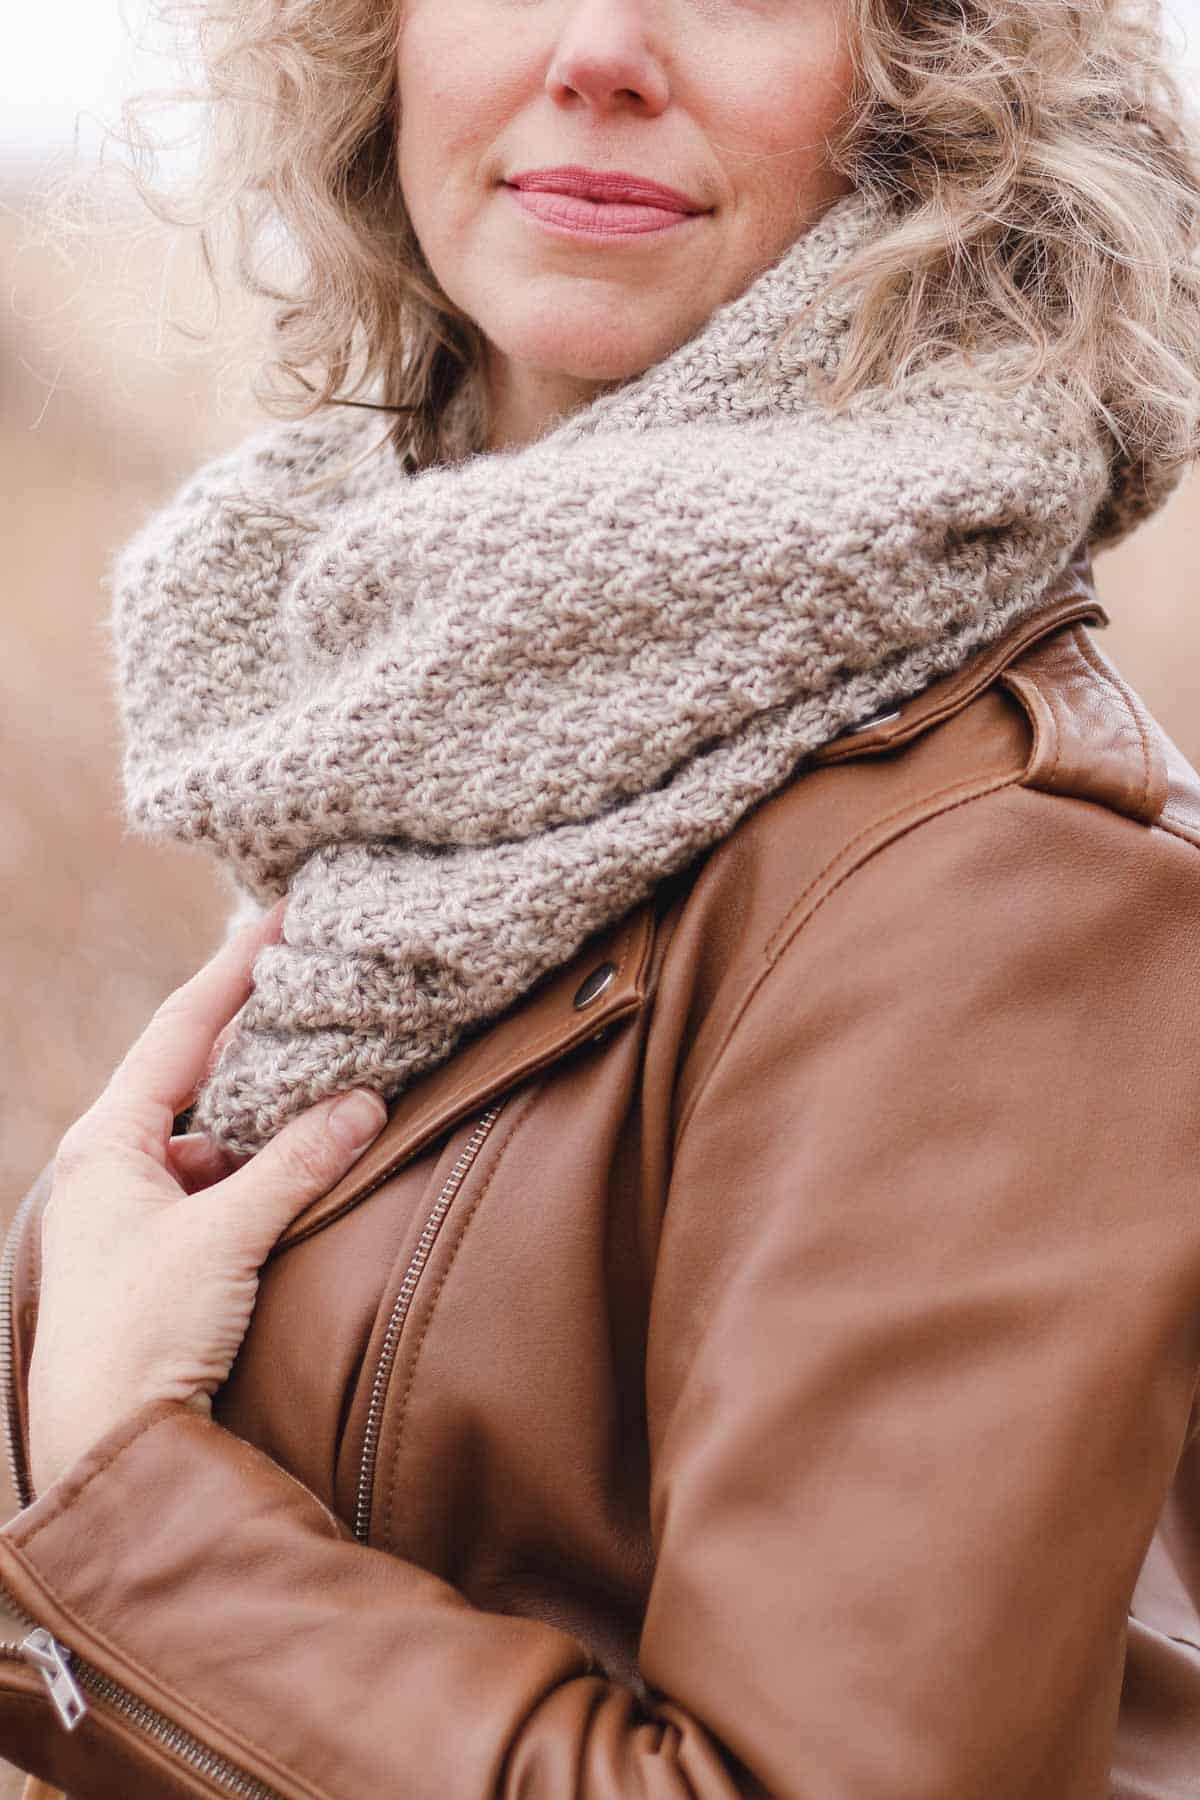 Hand knit infinity scarf modeled by Jess Coppom of Make & Do Crew.